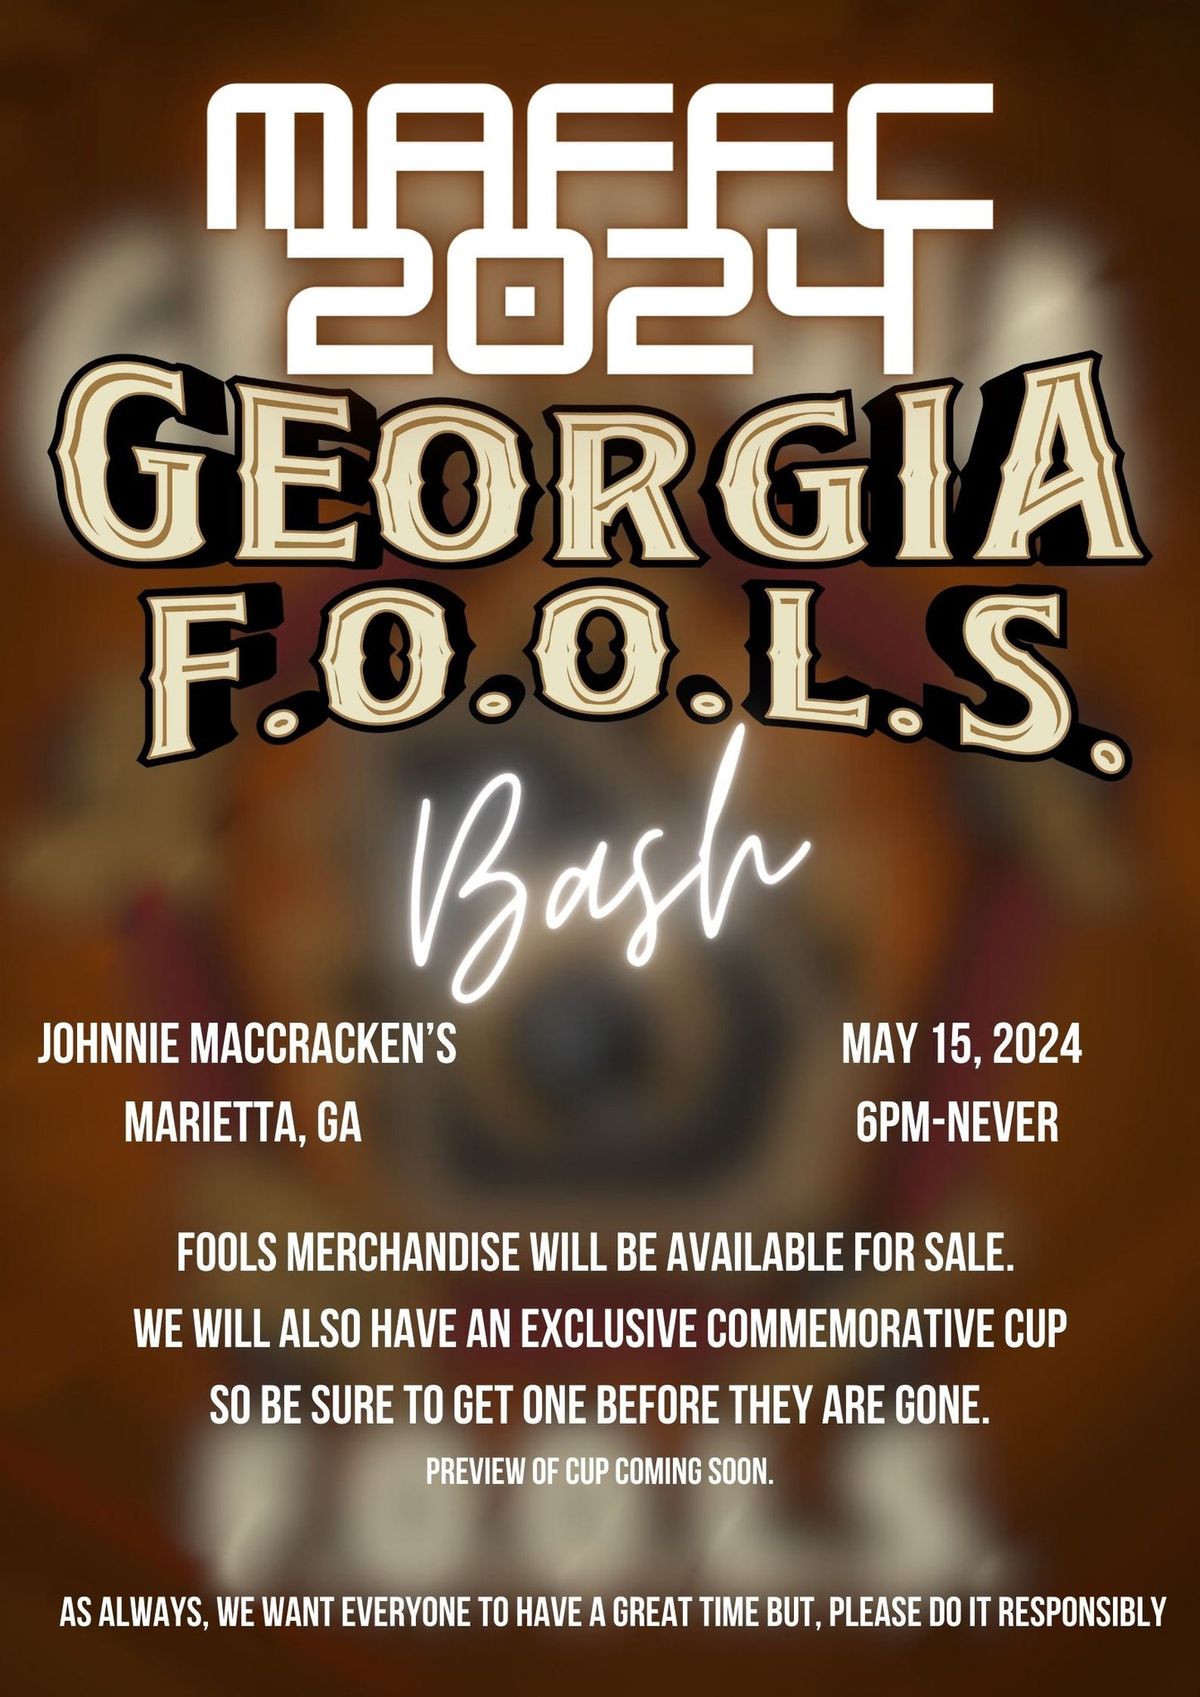 MAFFC 2024 GEORGIA F.O.O.L.S. BASH!